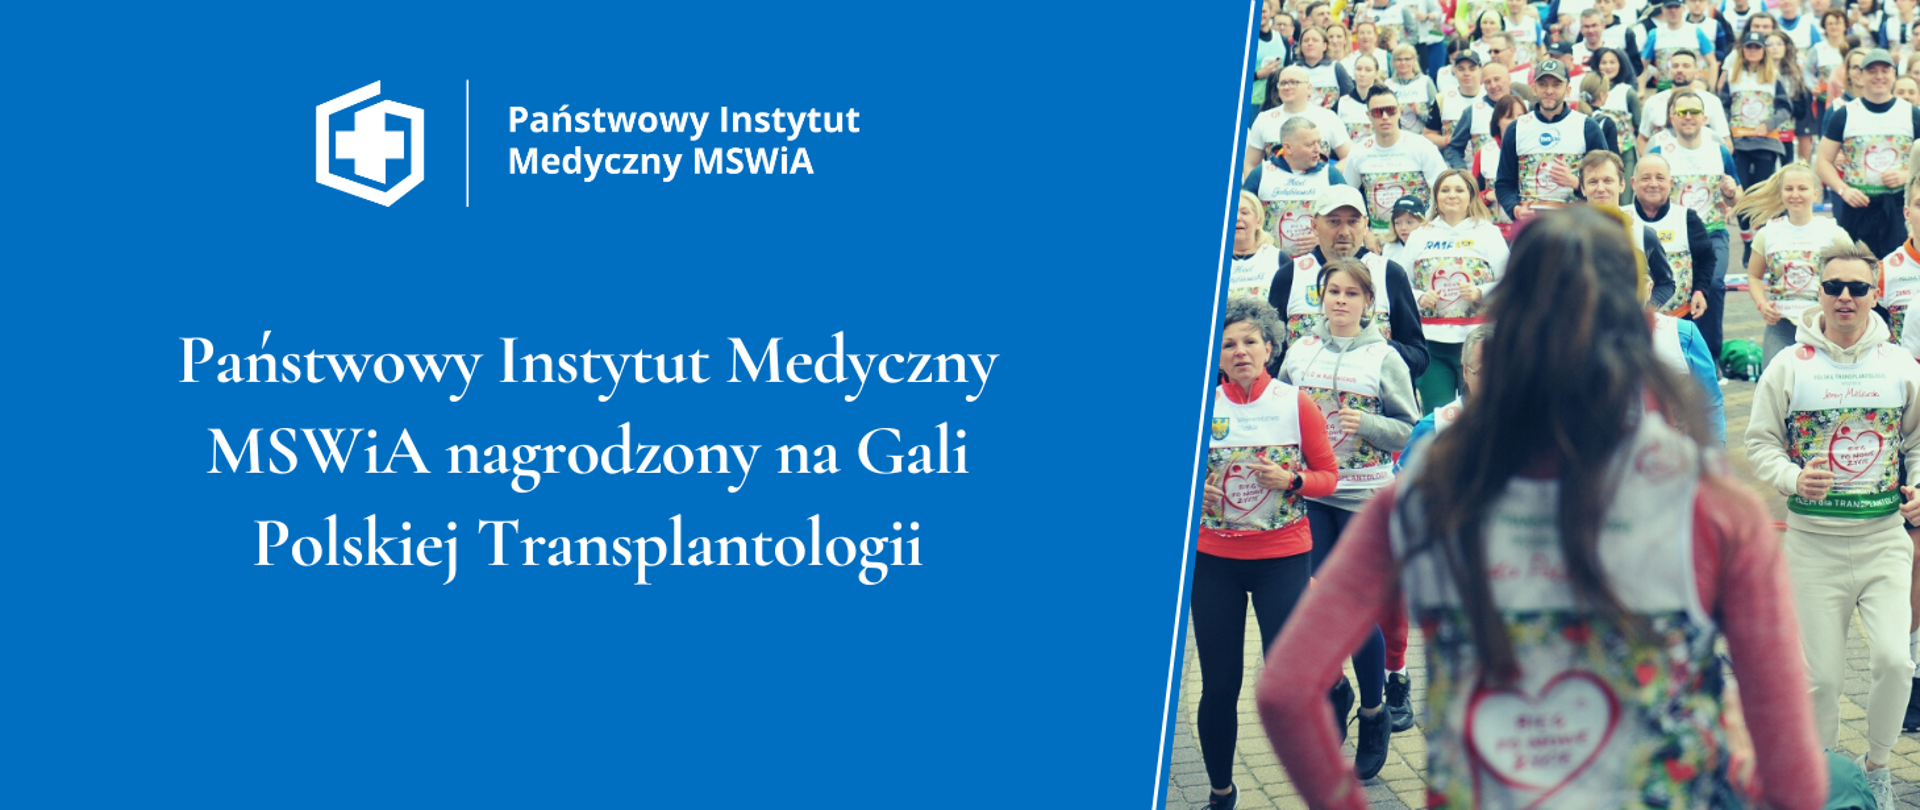 Państwowy Instytut Medyczny MSWiA nagrodzony na Gali Polskiej Transplantologii